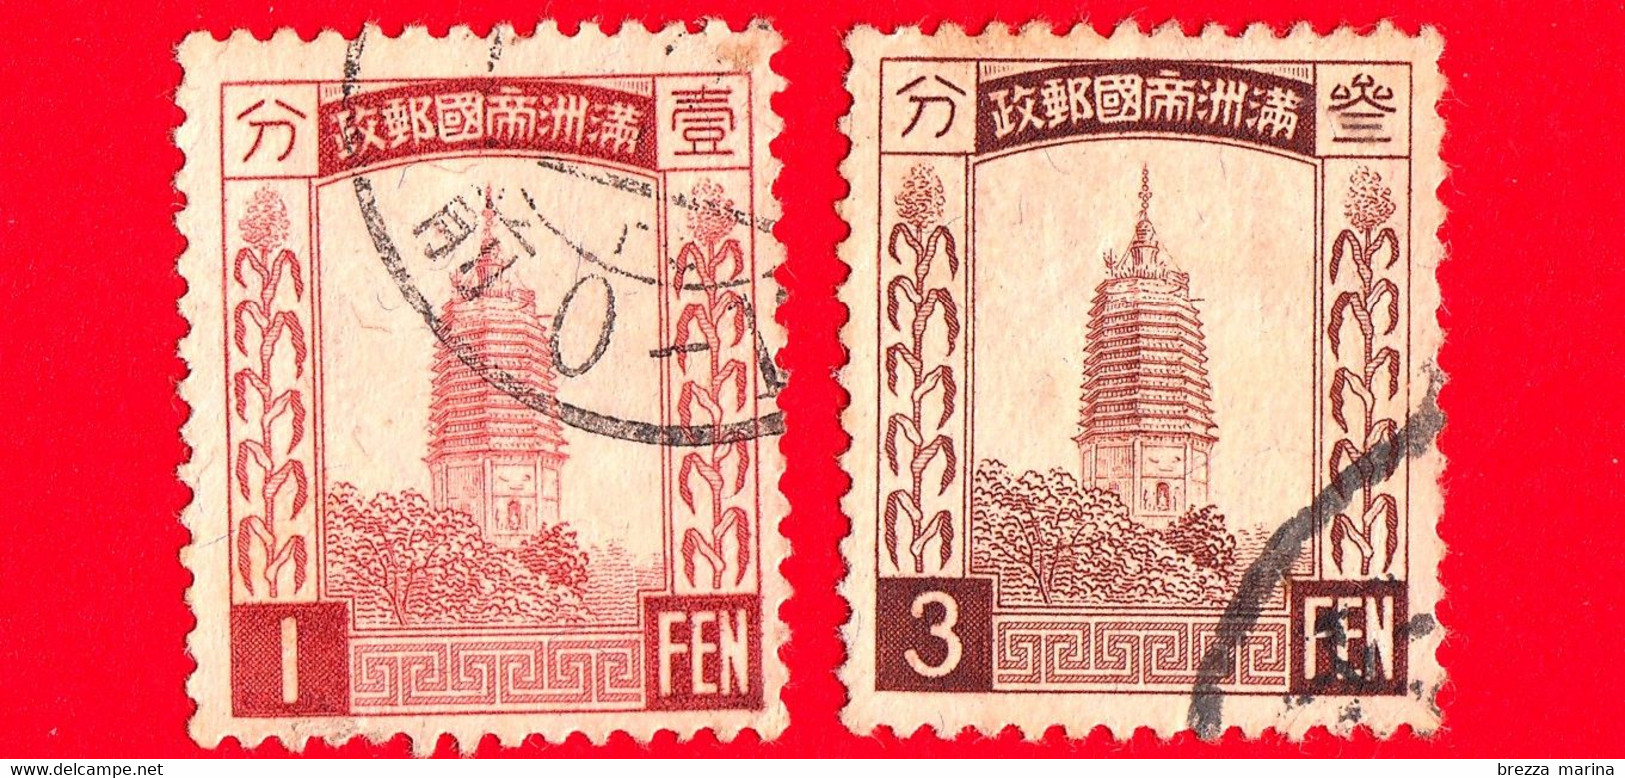 CINA - Manciuria  - Usato - 1932 - (Manciukuo) - Pagoda Bianca Di Liaoyang - 1 - 3 - 1932-45 Manchuria (Manchukuo)